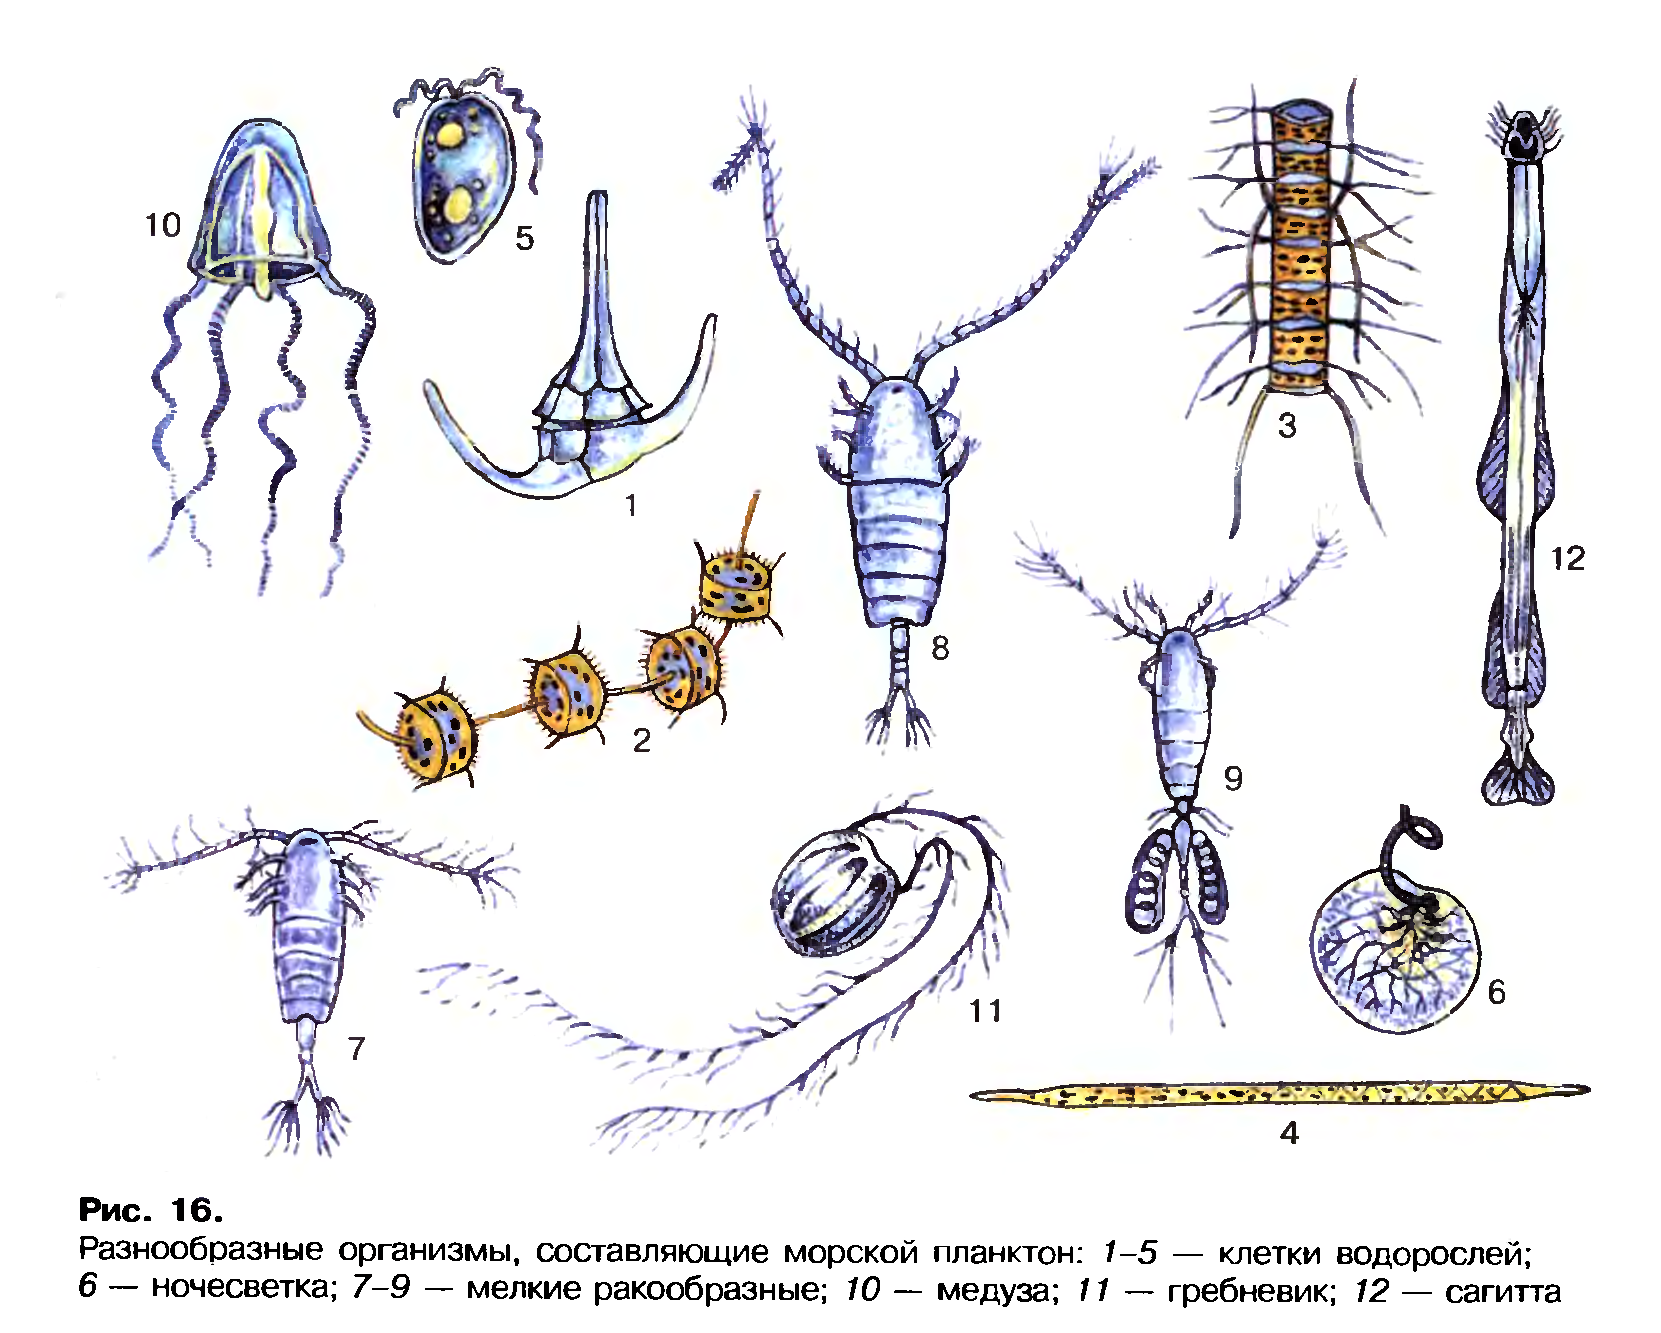 Зоопланктоны ракообразные. Планктон фитопланктон зоопланктон бентос. Планктонные ракообразные представители. Морской планктон рачок. Зоопланктон составляют